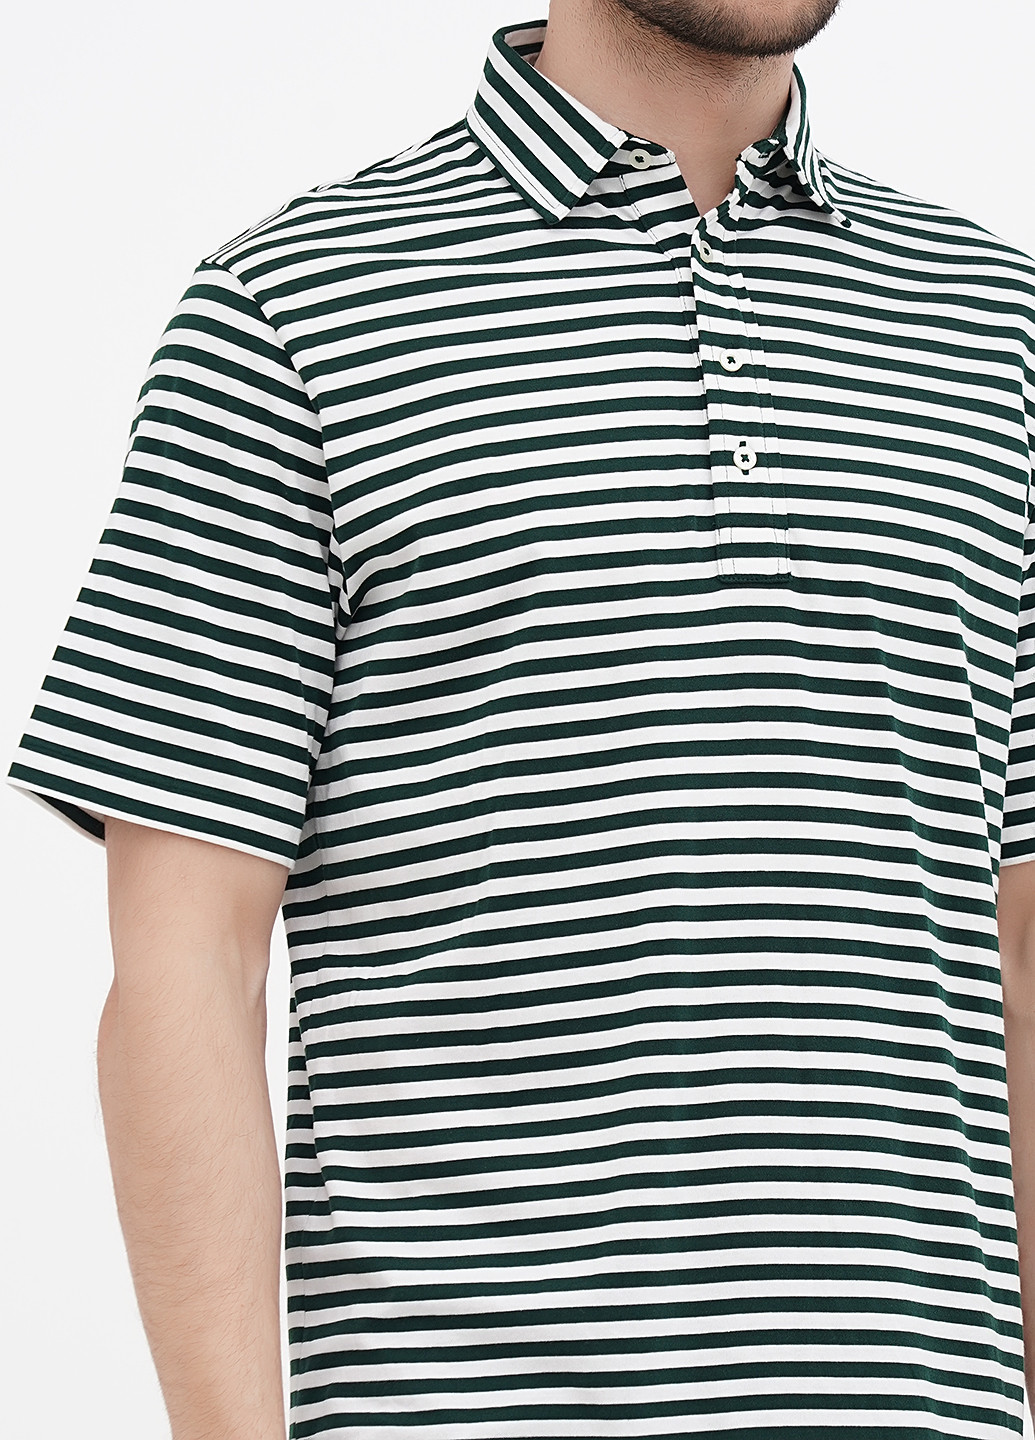 Темно-зеленая футболка-поло для мужчин Ralph Lauren в полоску